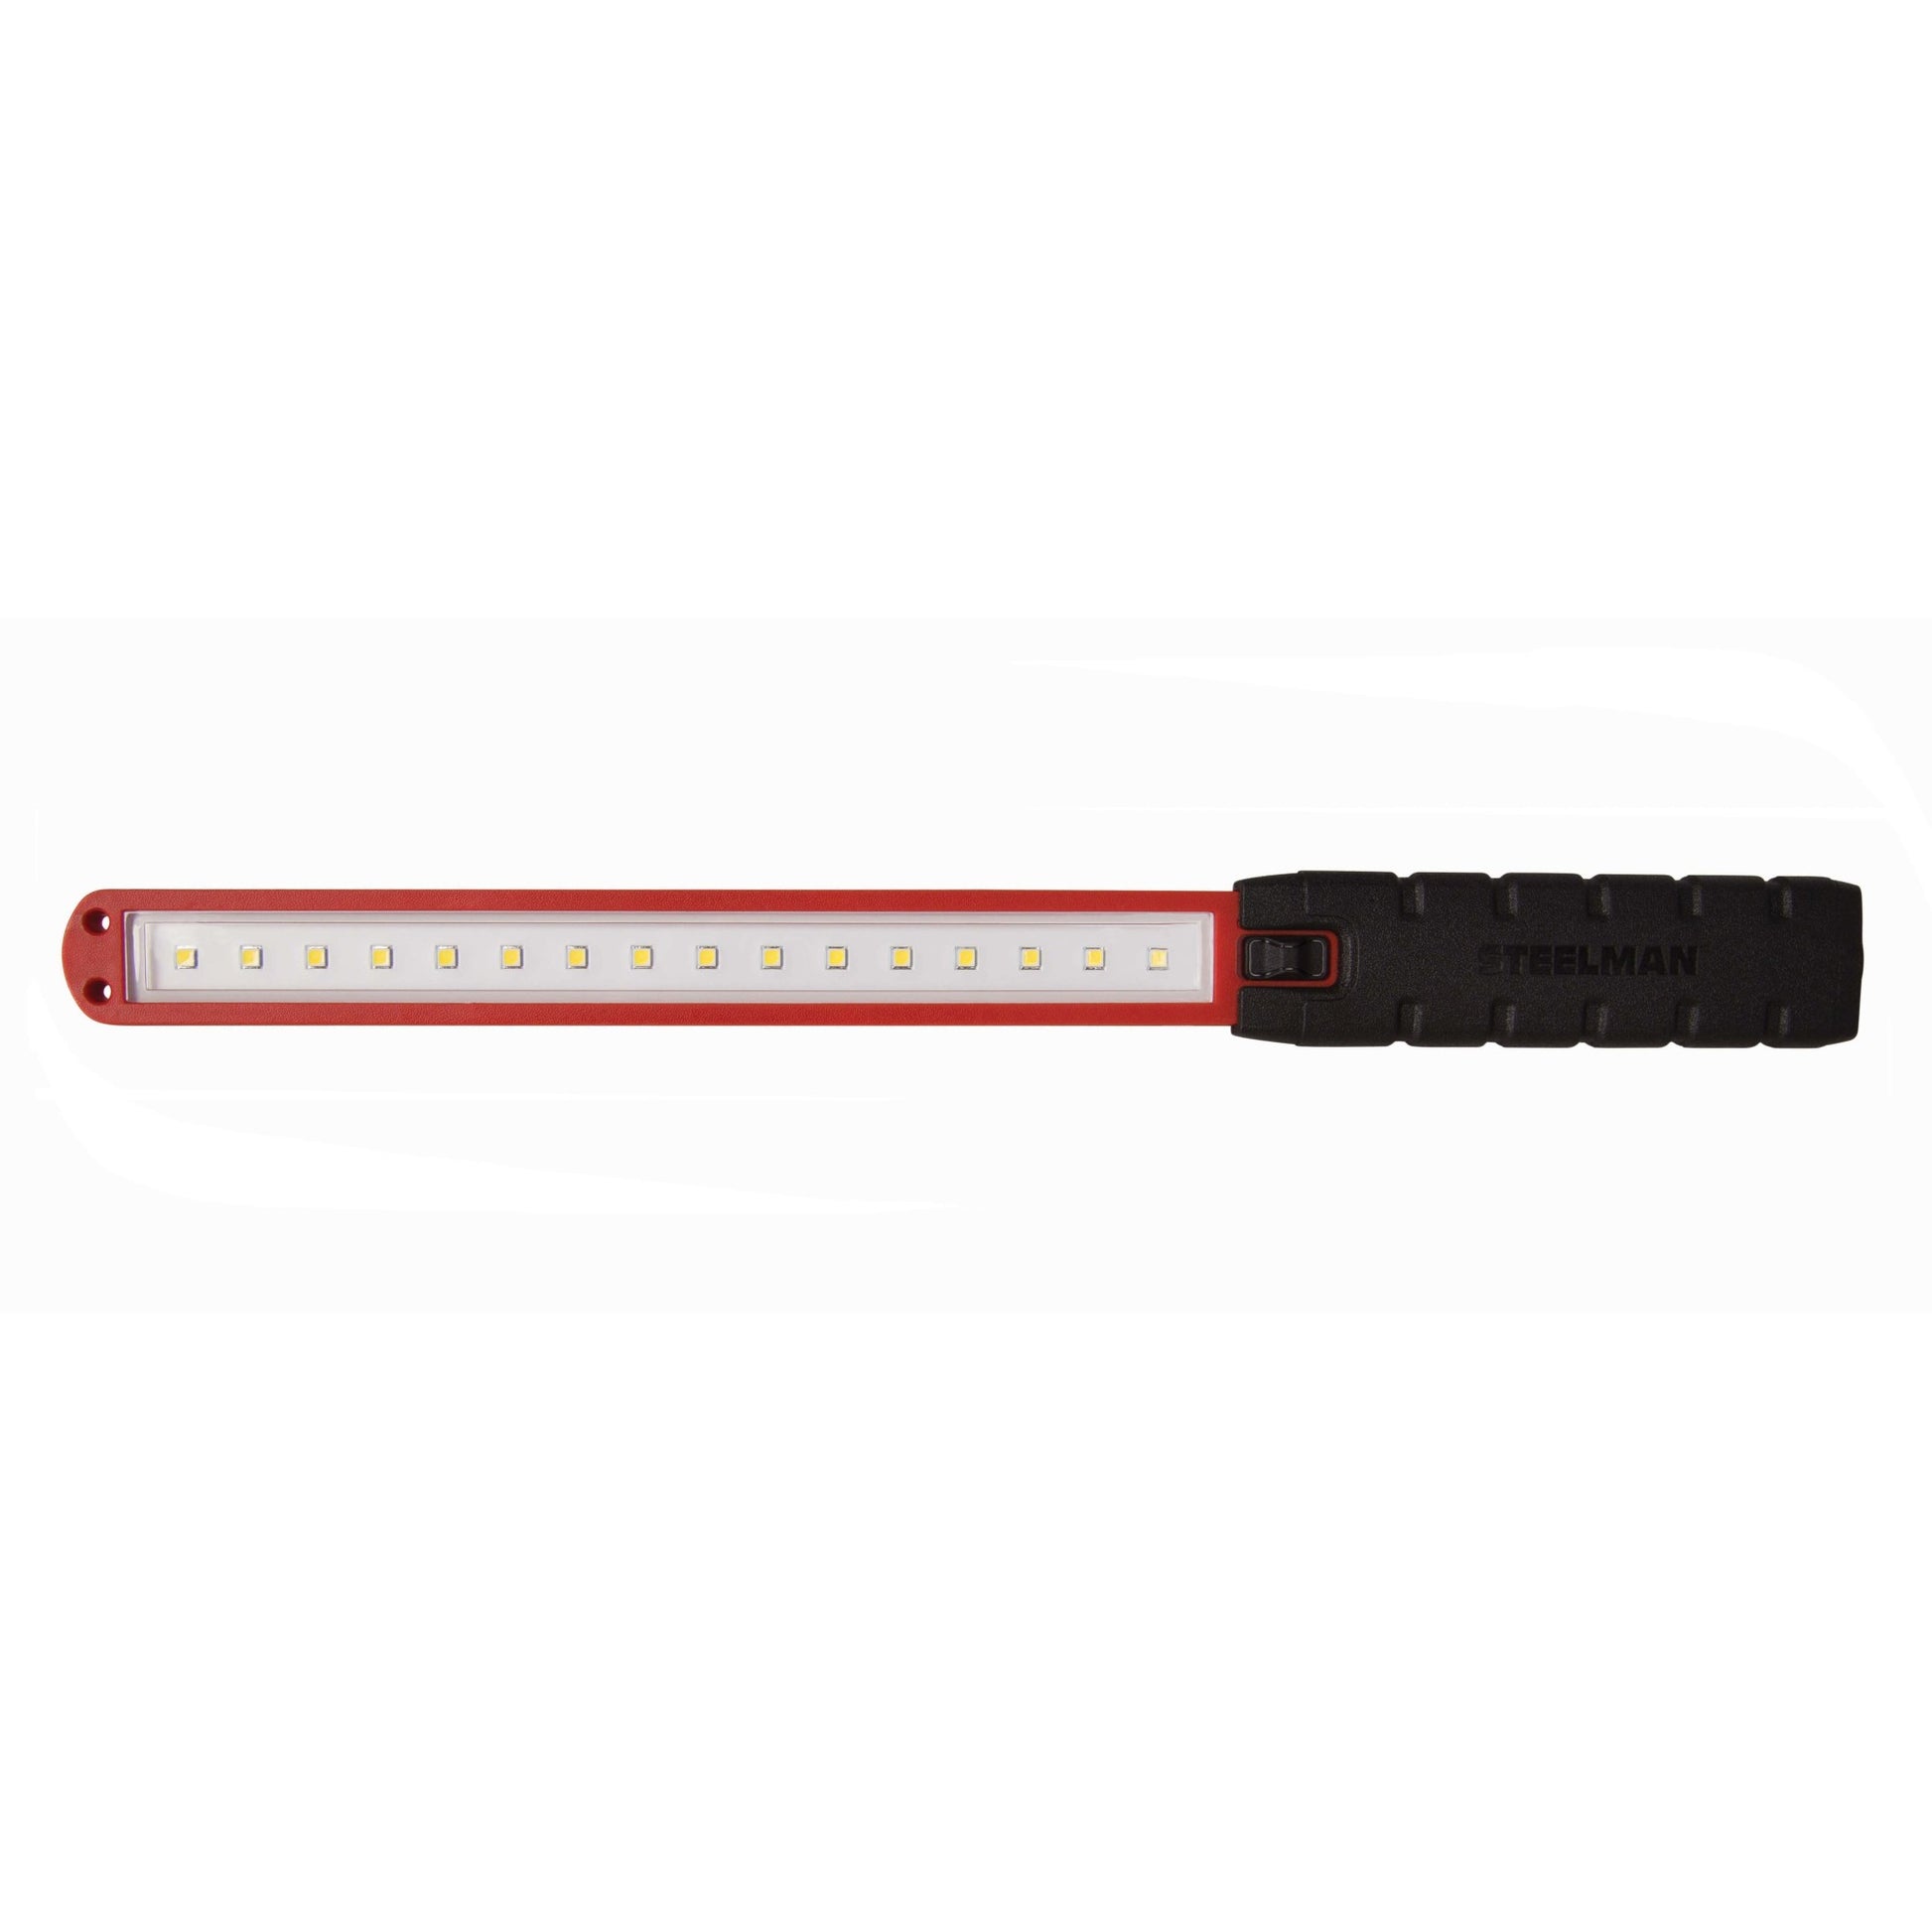 Steelman 99761 LED Slim-Lite with 40-Foot Cord Reel